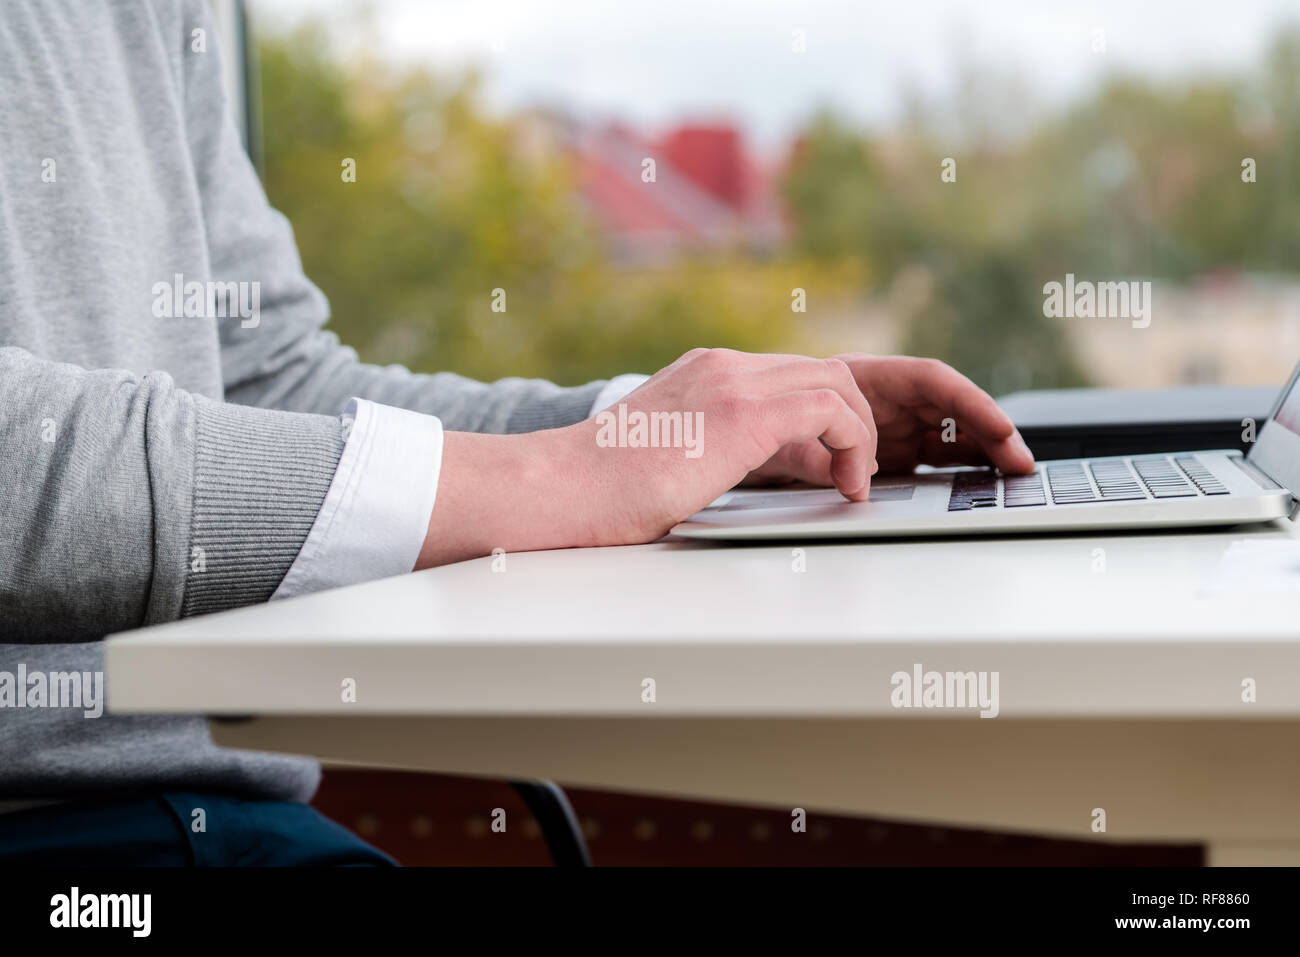 Man hands typing on laptop keyboard au bureau. Les hommes et les gens d'affaires concept. Soft focus sur table en bois blanc moderne. Banque D'Images